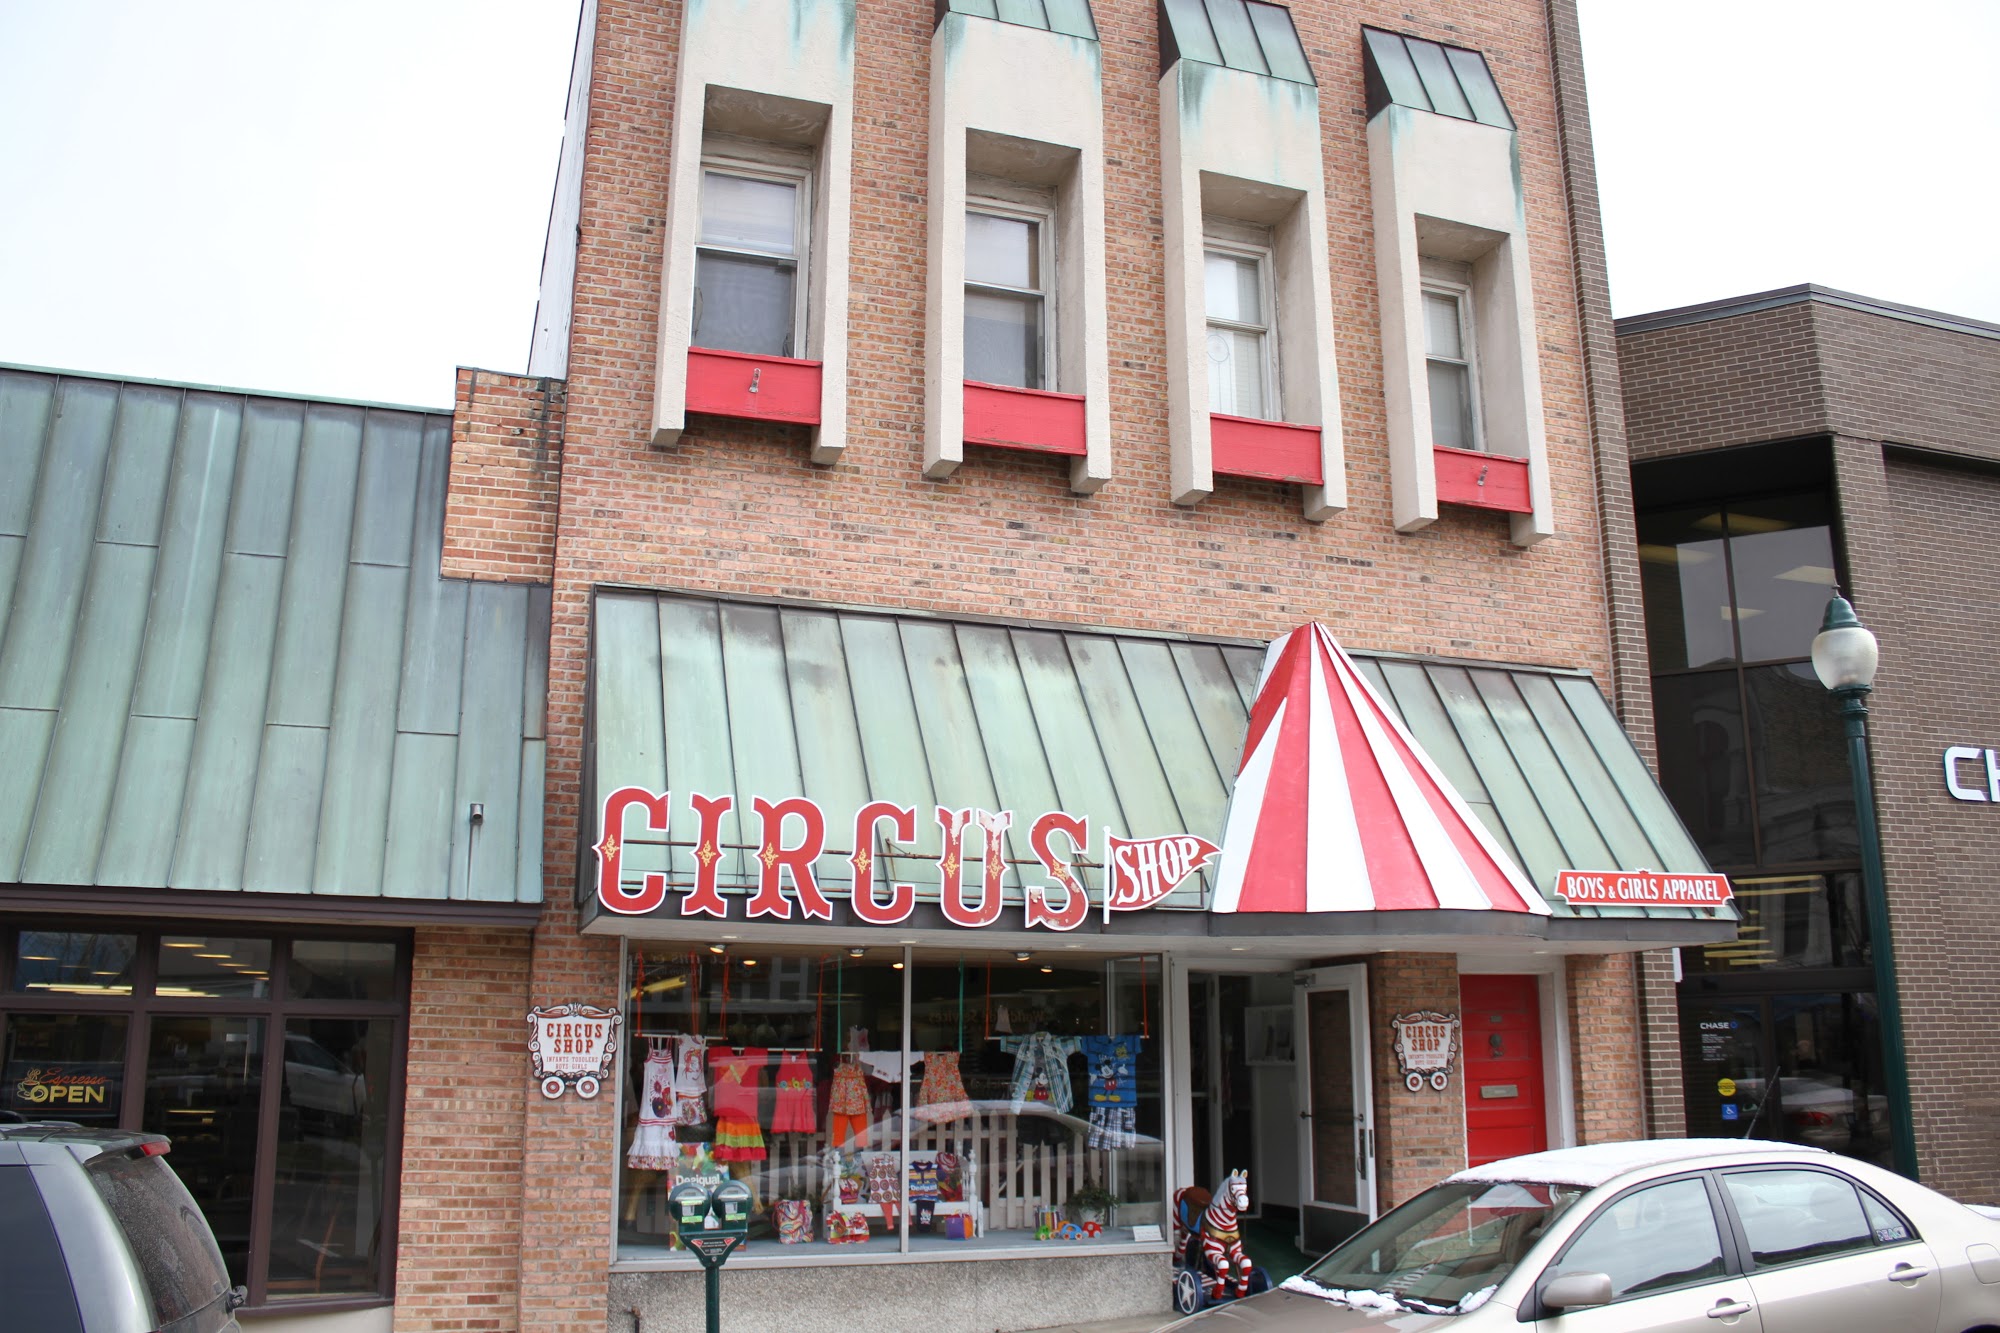 The Circus Shop